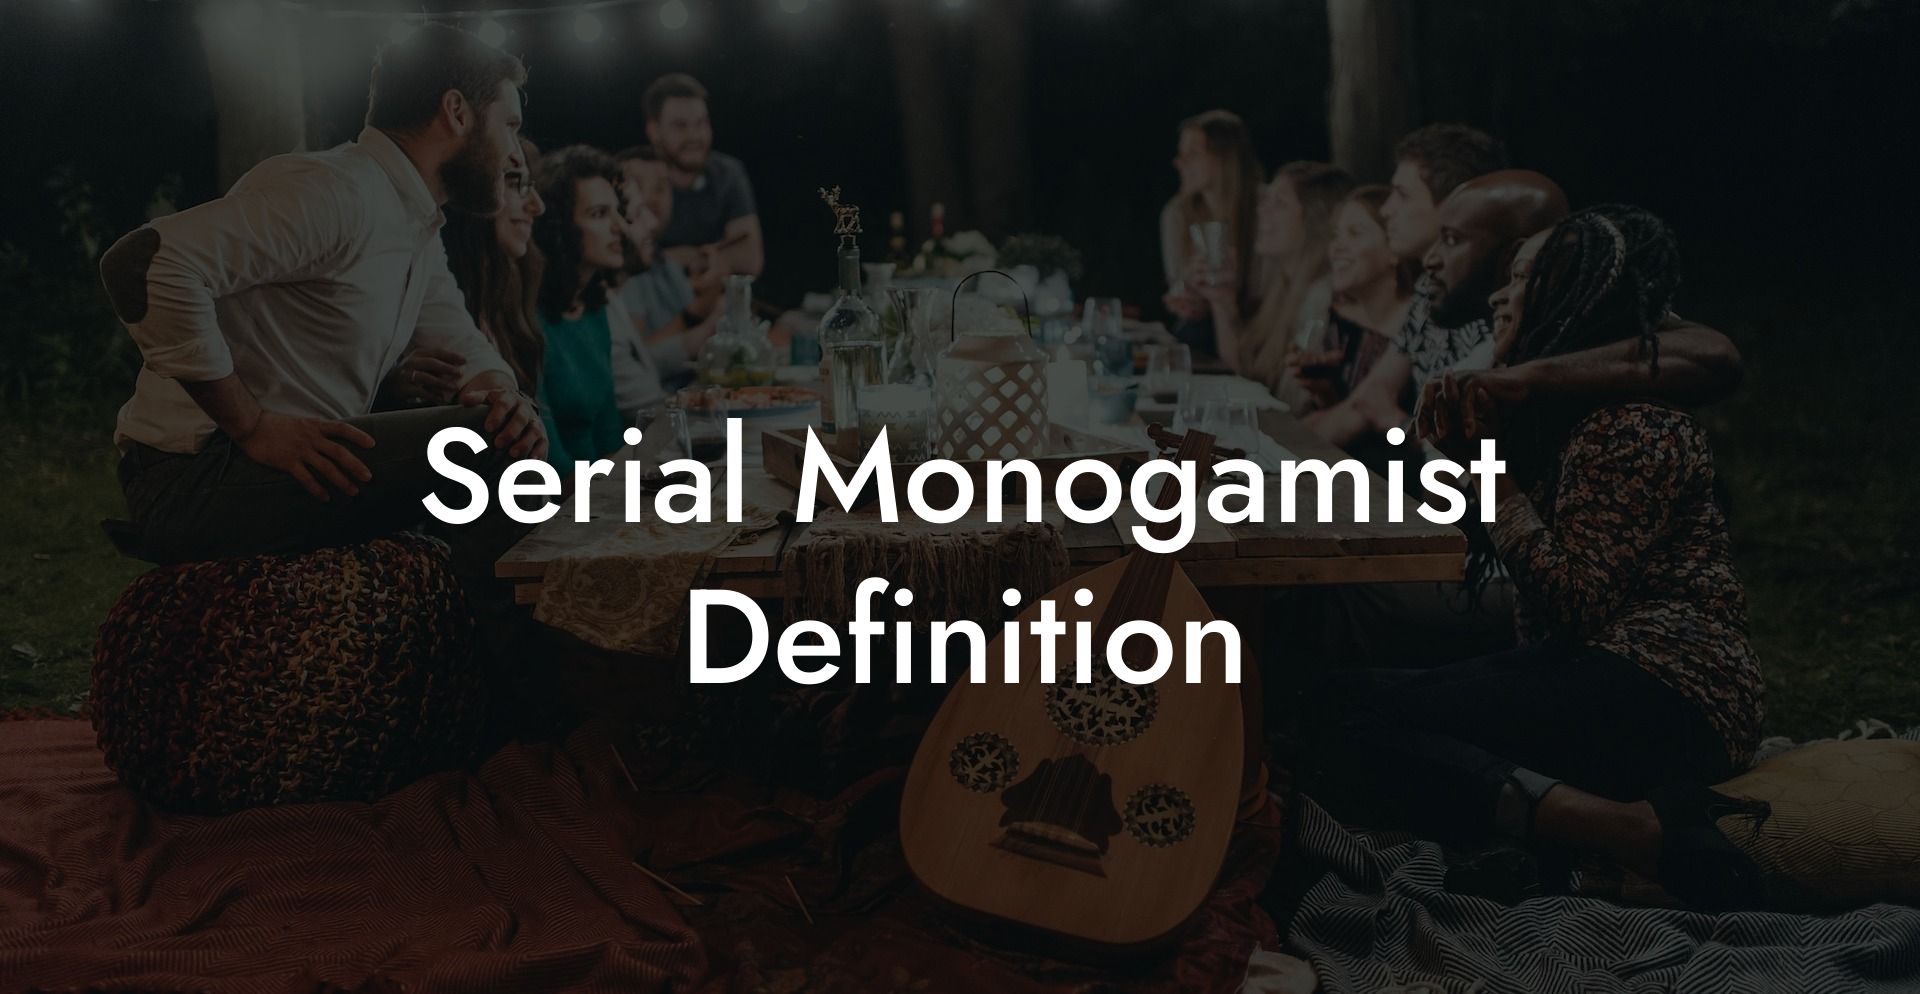 Serial Monogamist Definition